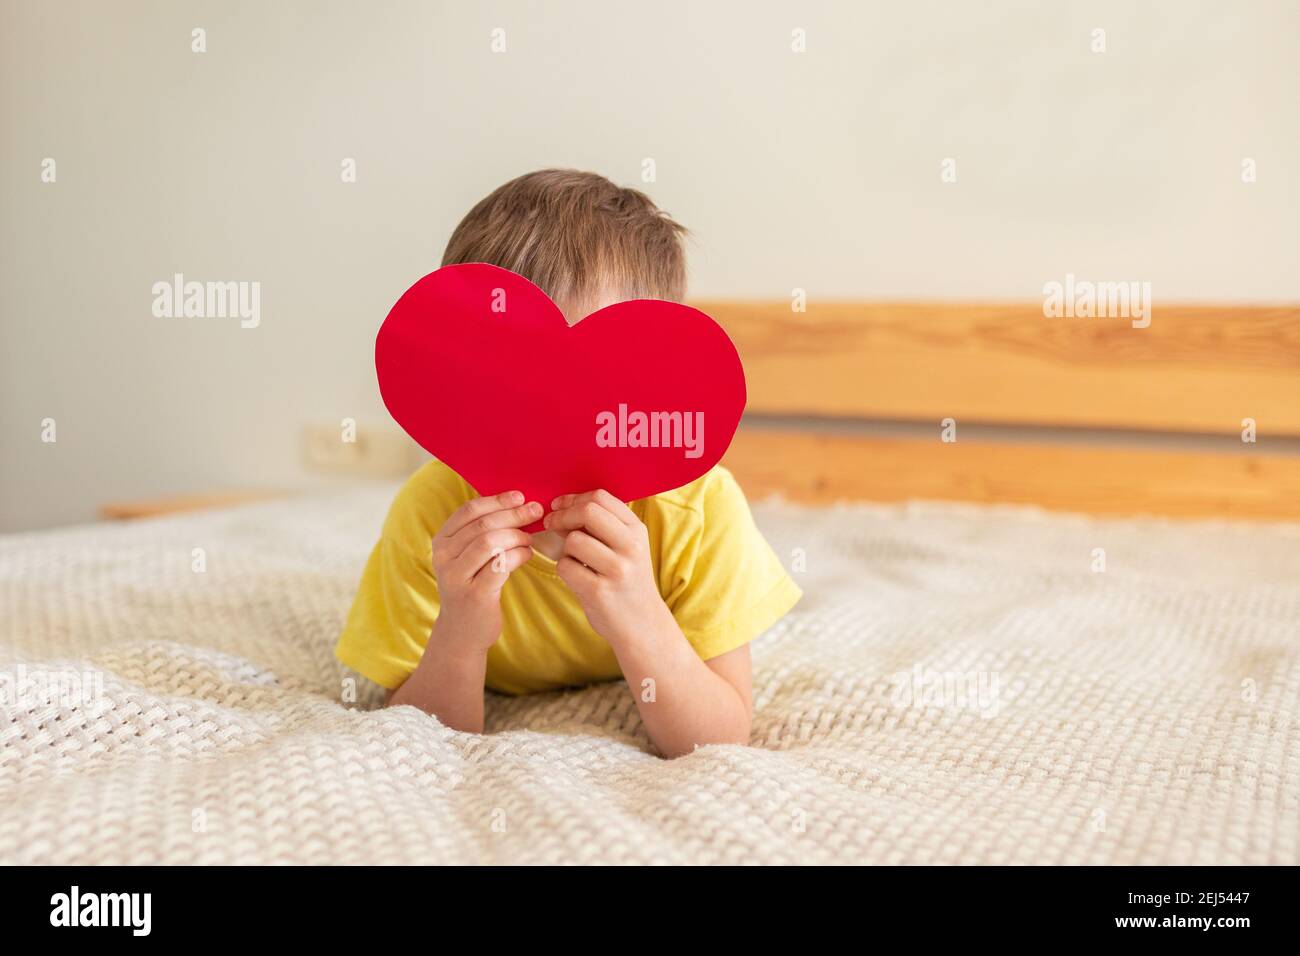 Petit garçon allongé sur le lit et tenant un coeur rouge en papier coloré, couvrant son visage. Concept pour le 8 mars, Fête des mères. Carte postale Banque D'Images